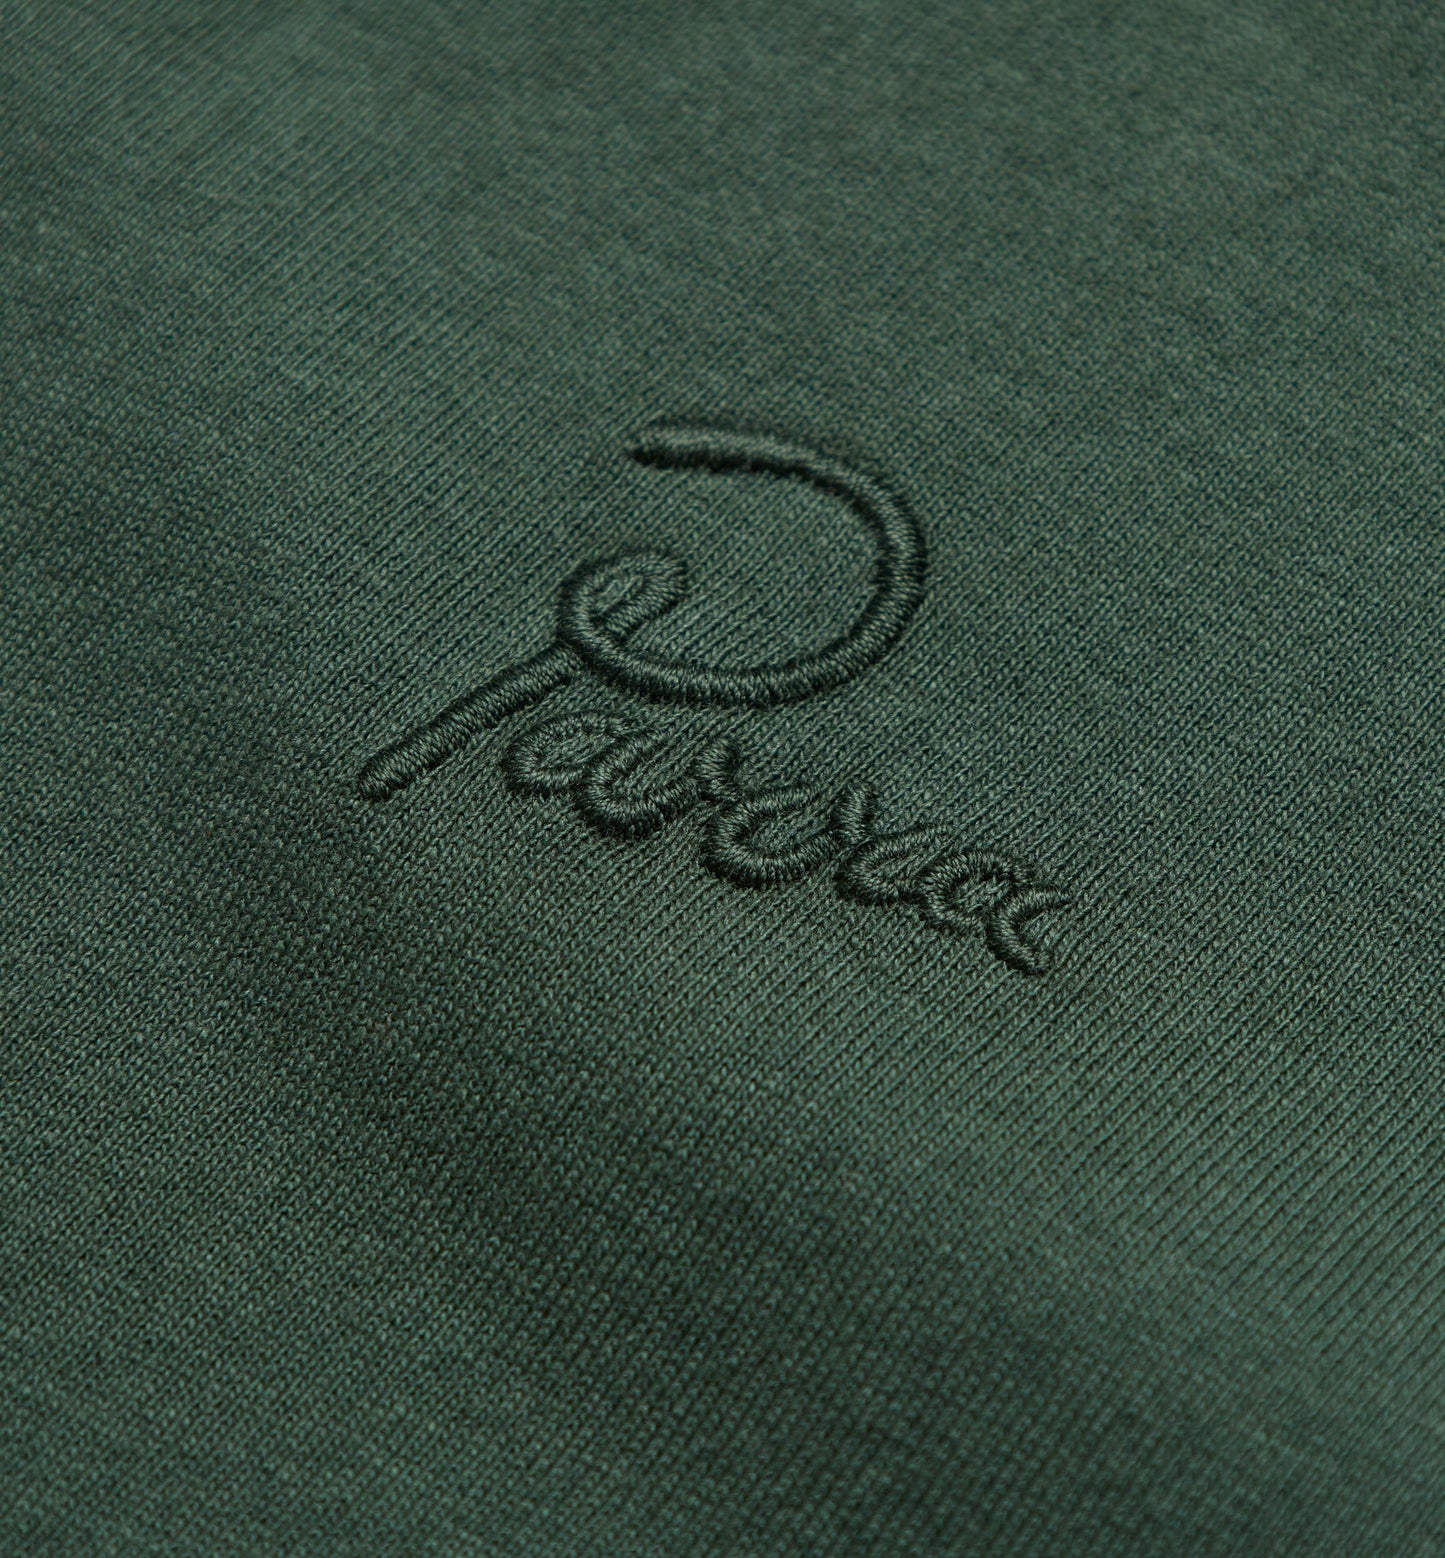 By Parra Logo T-Shirt Pine Green